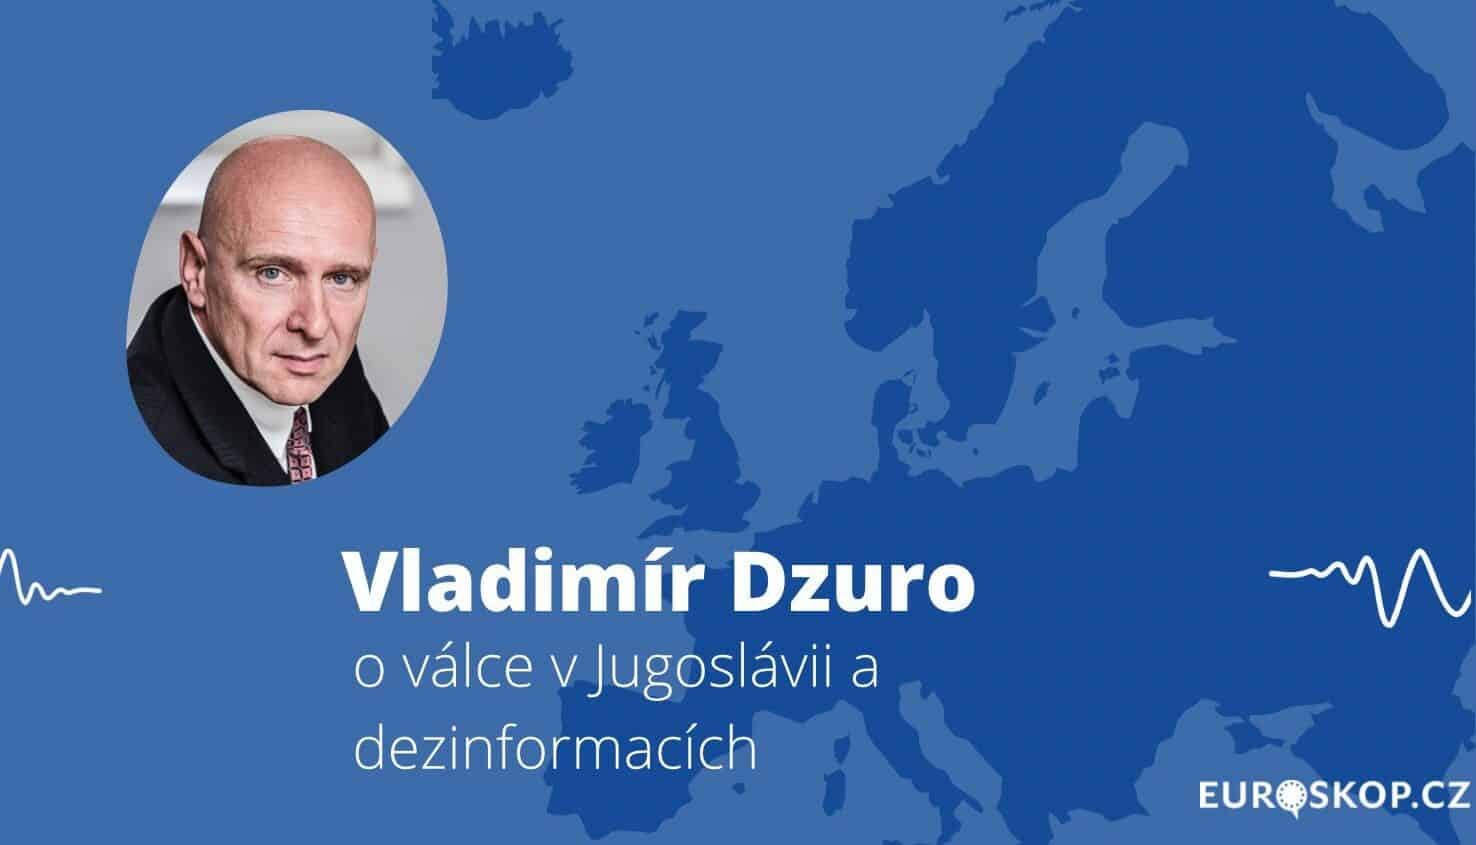 Přečtete si více ze článku Rozhovor s Vladimírem Dzuro o dezinformacích a válce v Jugoslávii